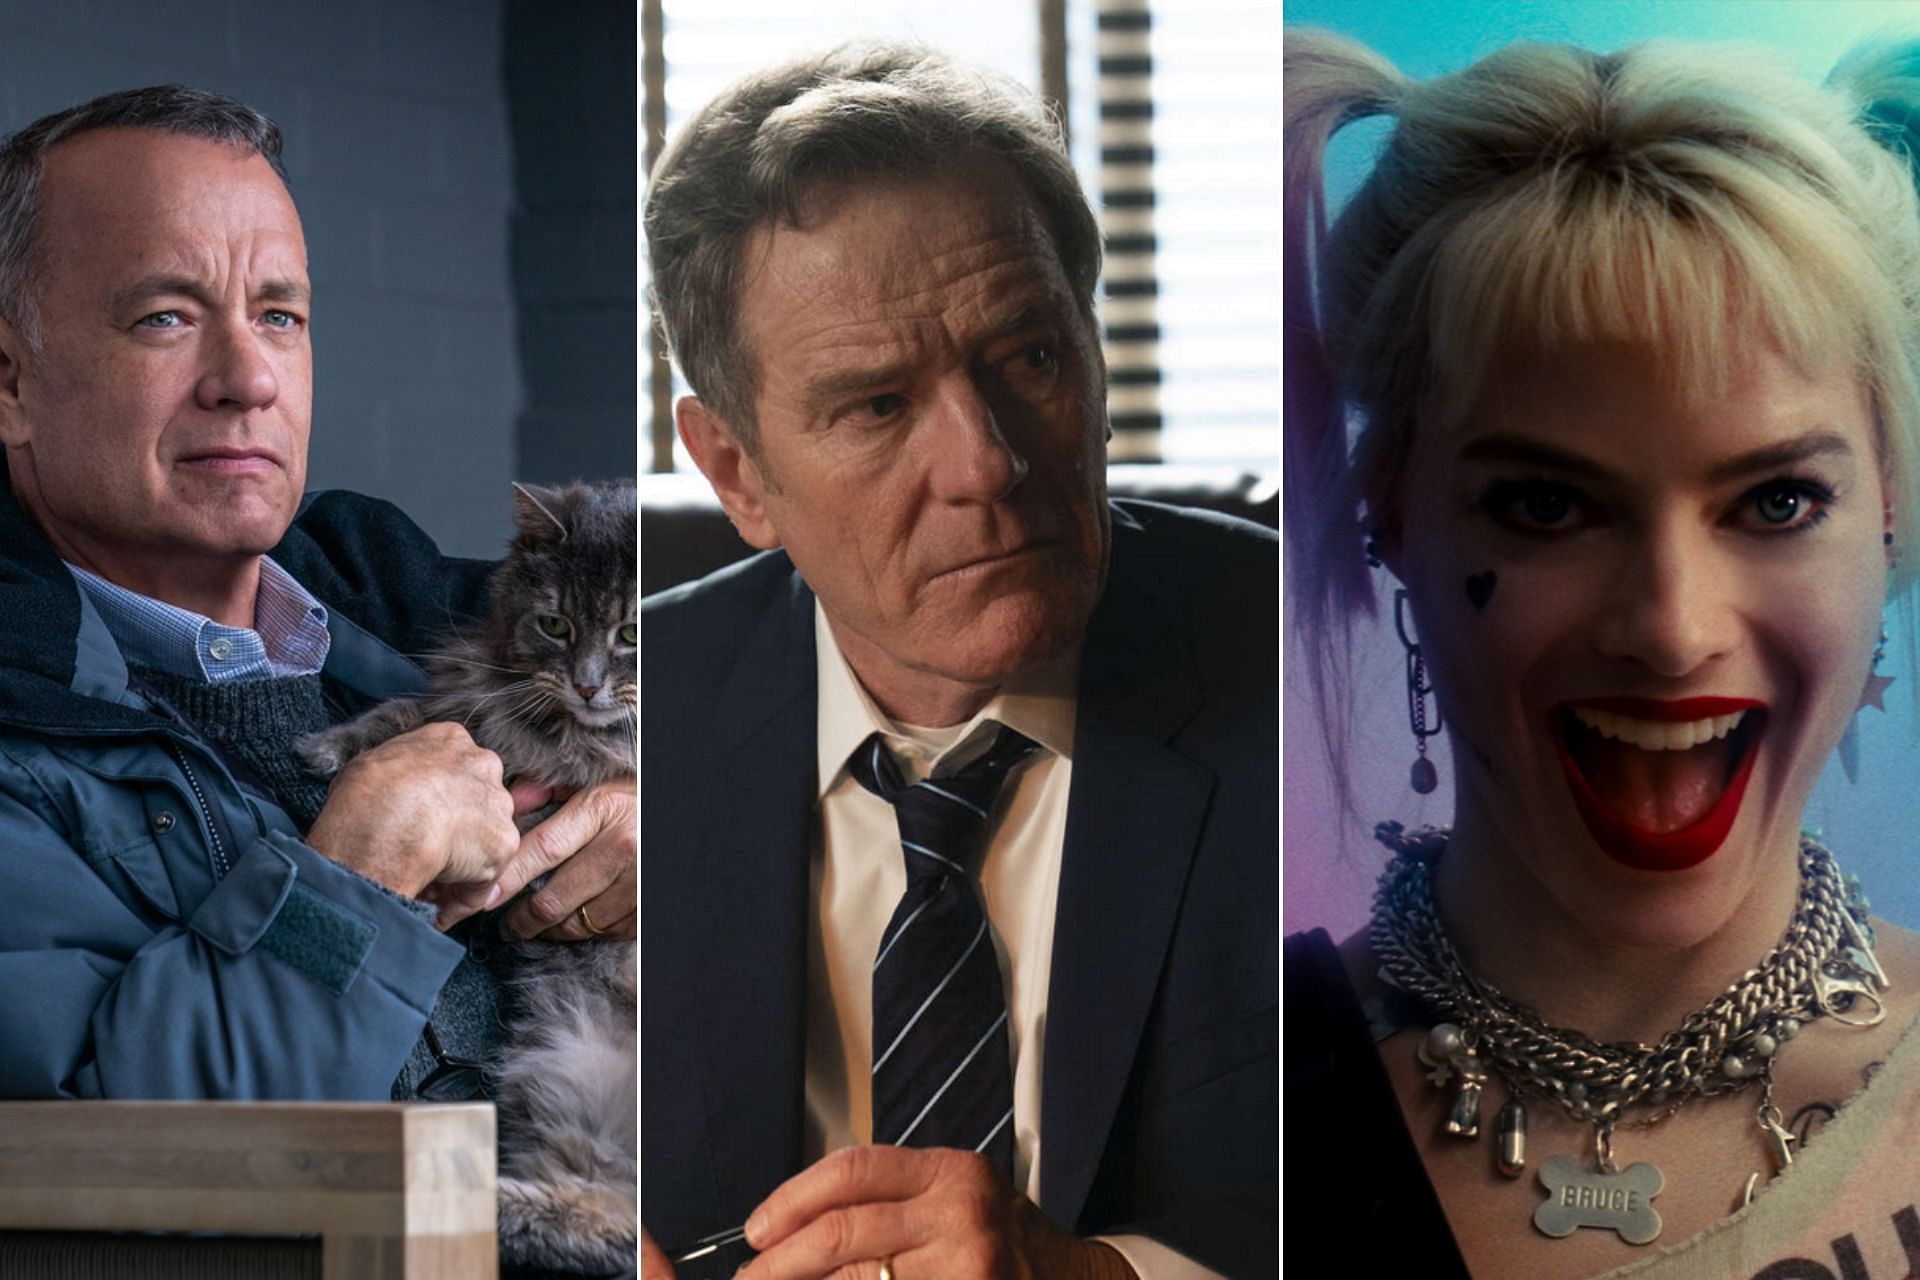 Asteroid City cast includes Tom Hanks, Margot Robbie, Bryan Cranston (Bryan Cranston